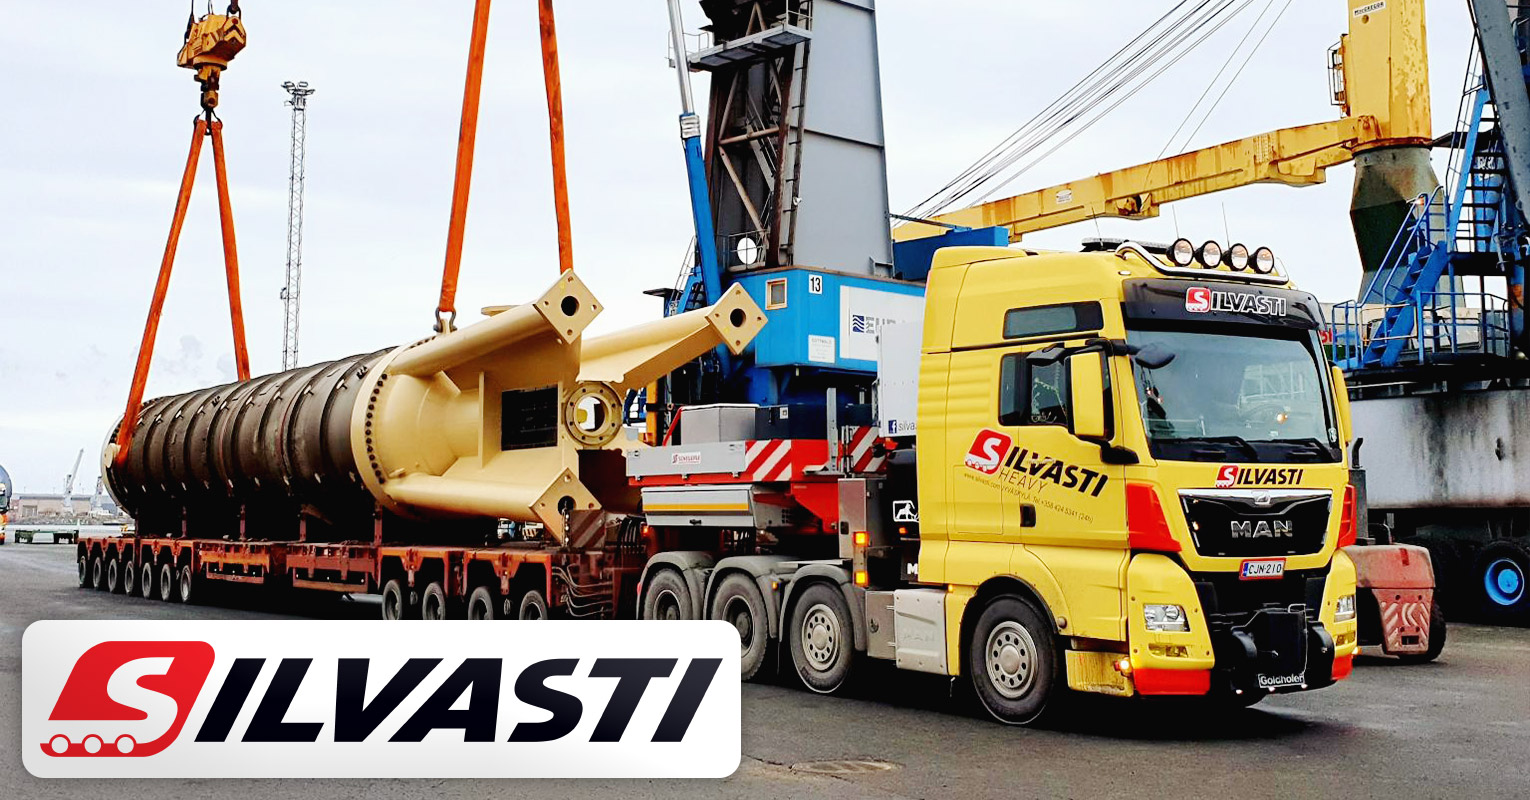 Silvasti Delivered a 117000 kg Pressure Diffuser